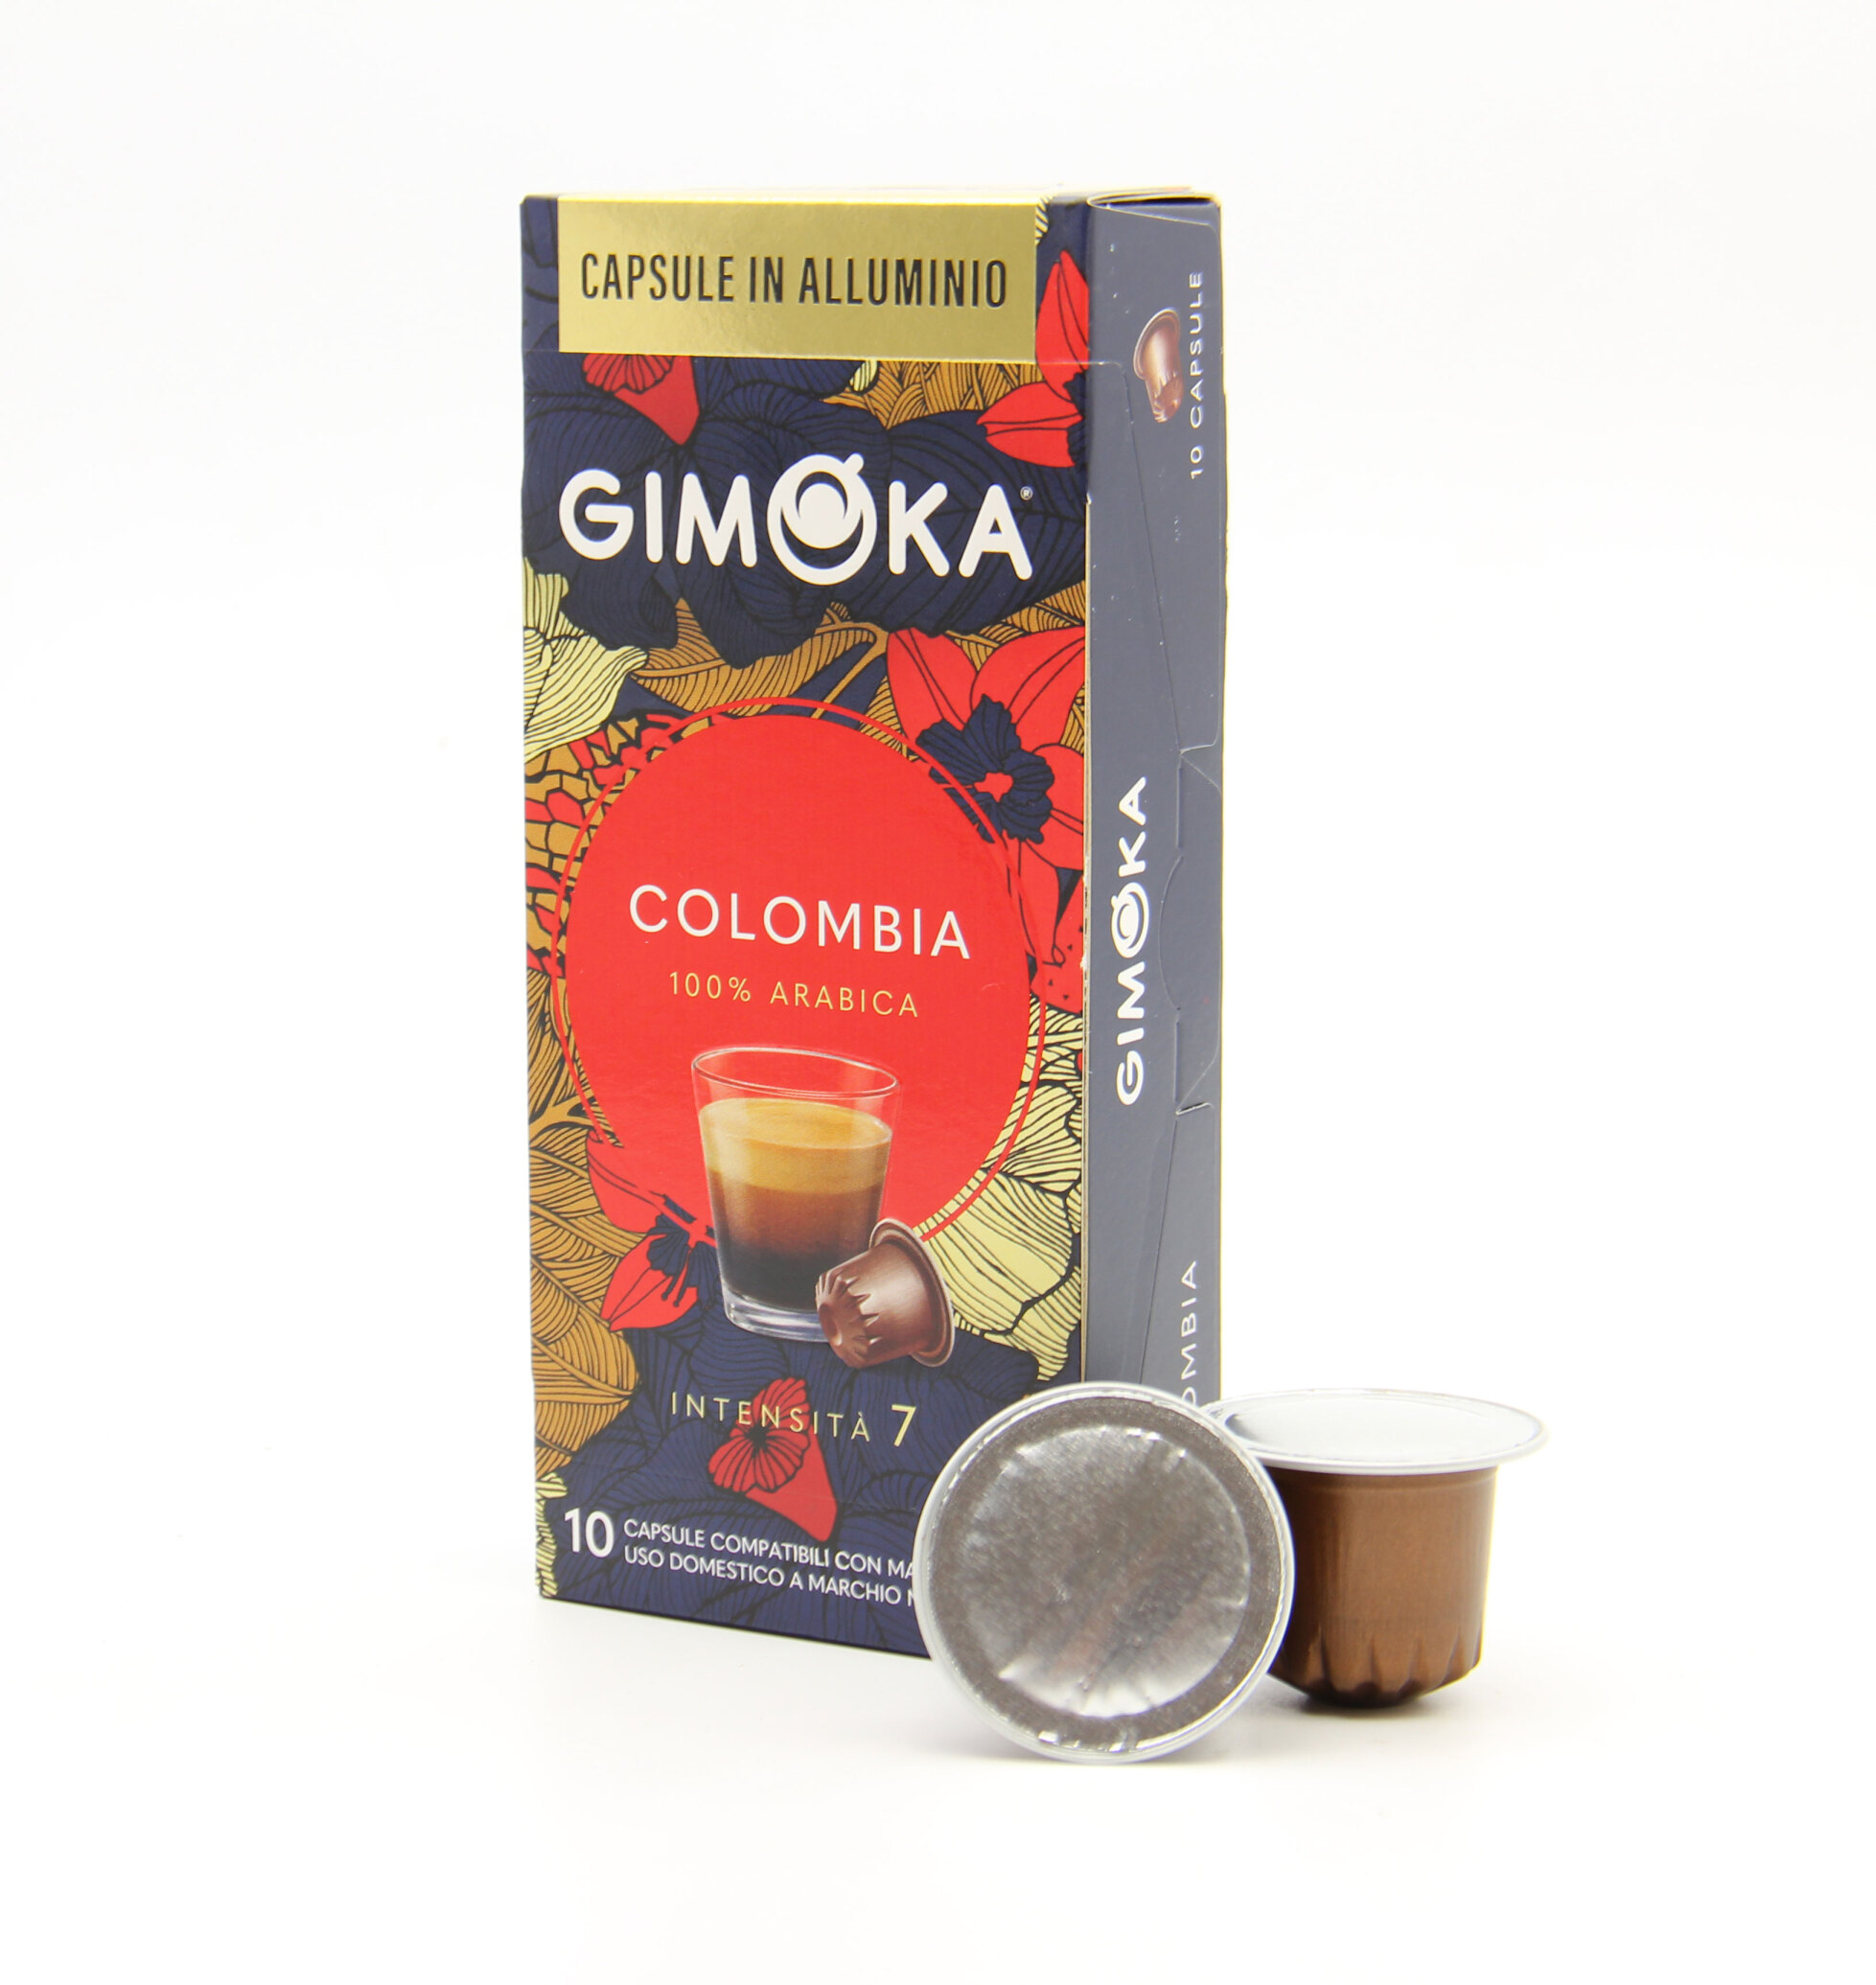  کپسول قهوه جیموکا کلمبیا | Gimoka colombia 